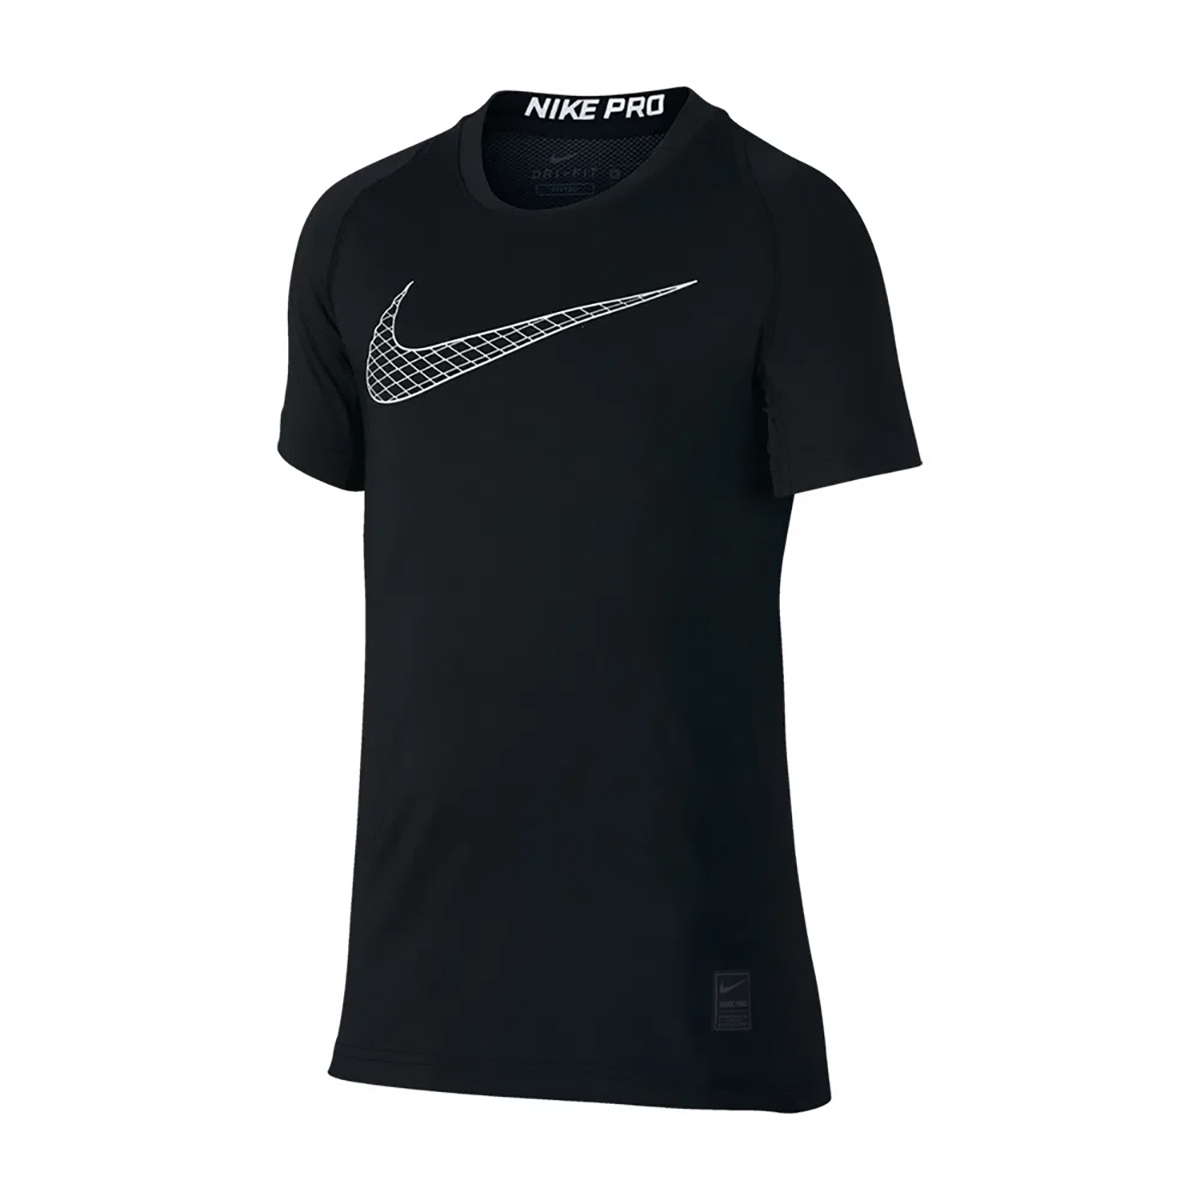 Remera Nike Pro Long Sleeve Training,  image number null